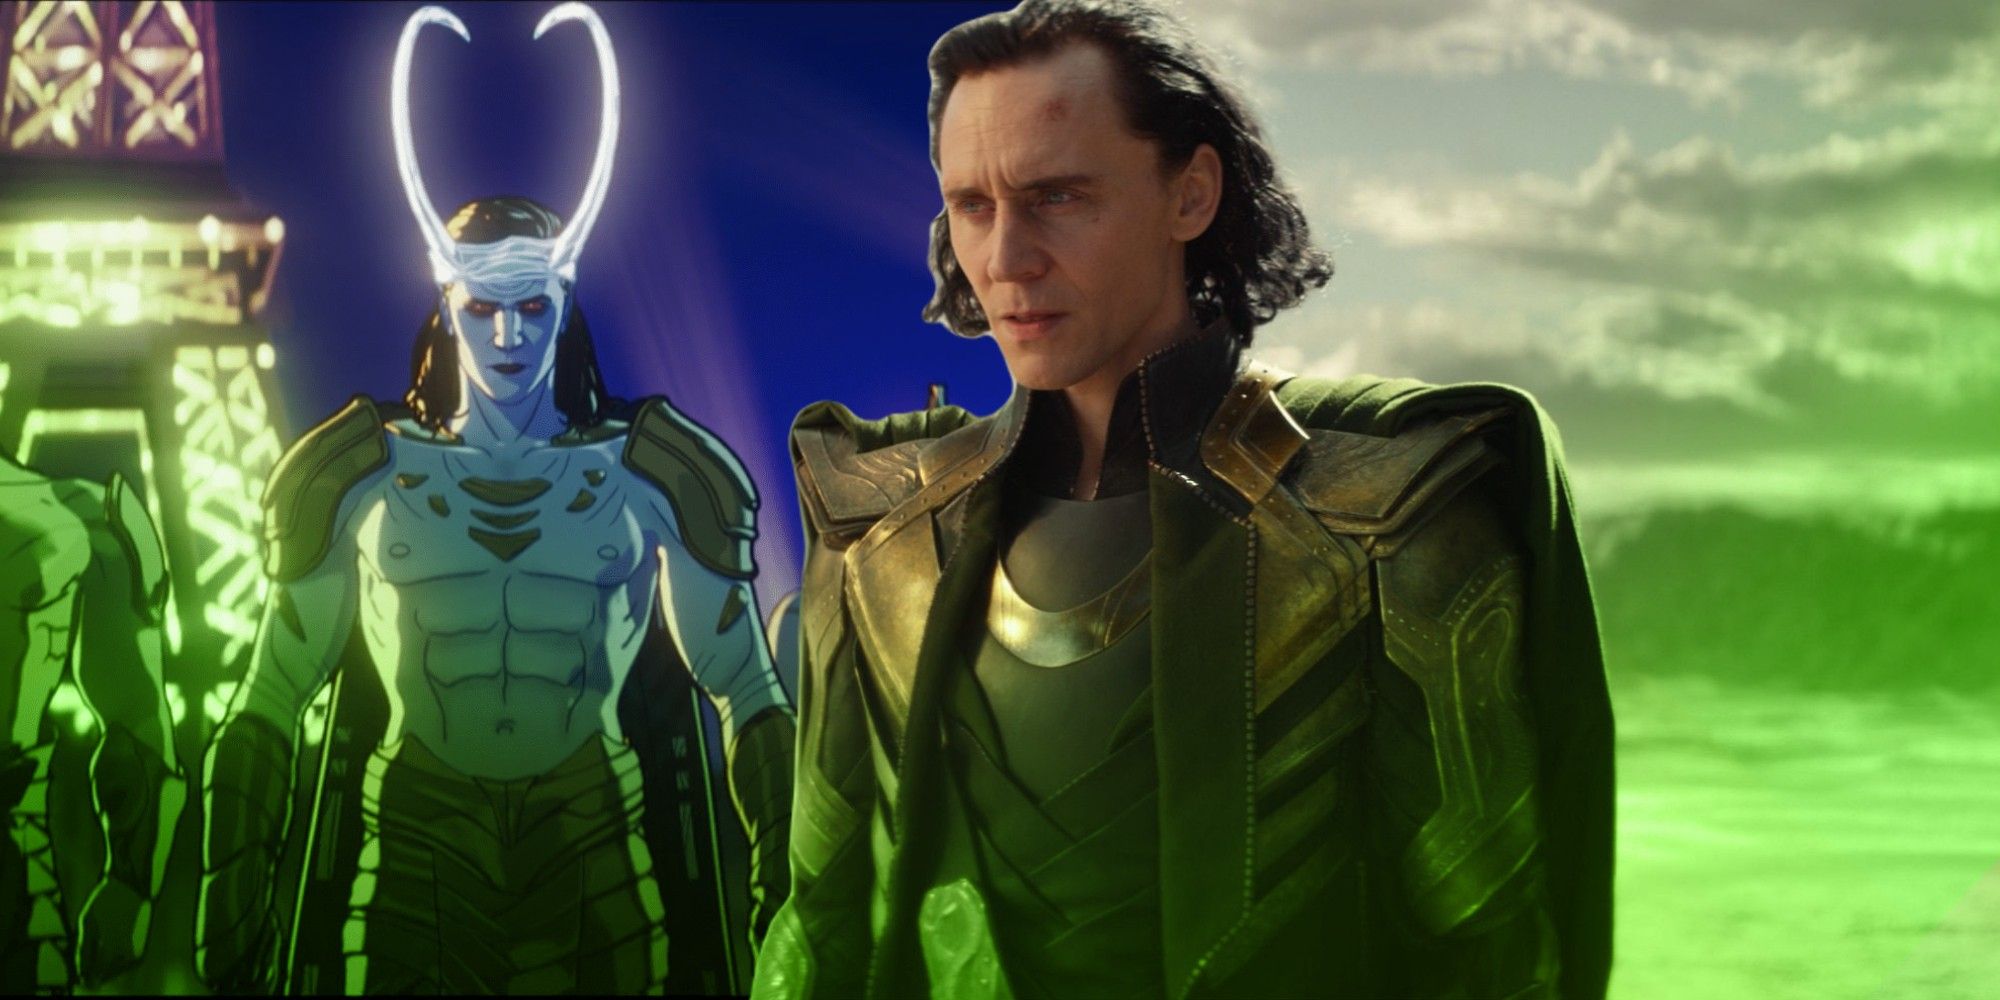 MCU Turns Lokis Sacred Timeline Fate Into A Gift